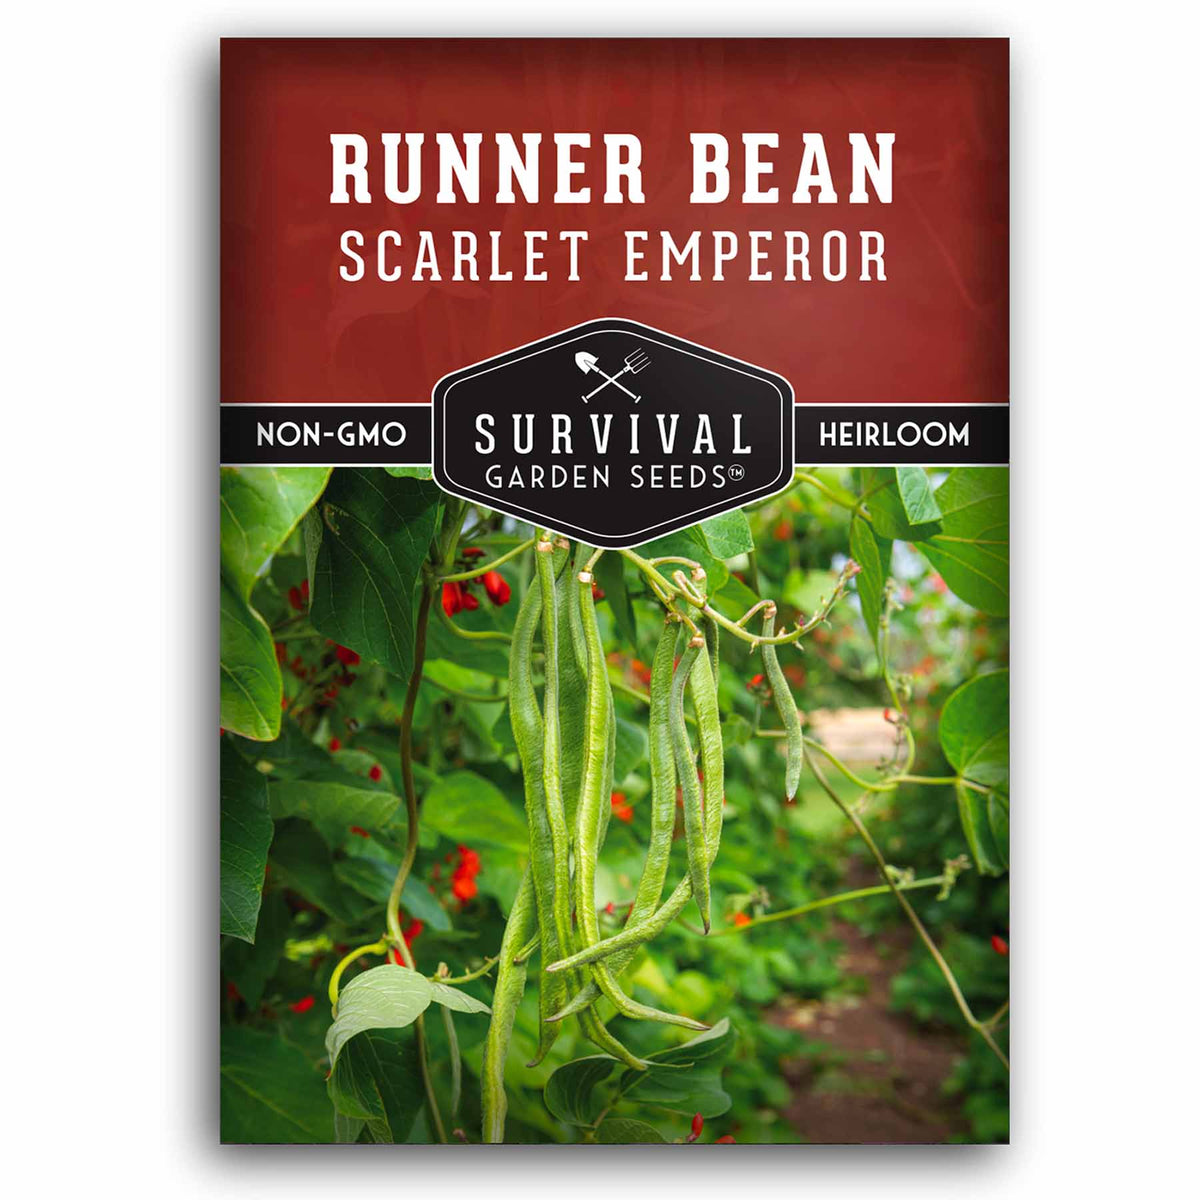 1 packet of Scarlet Runner Bean seeds